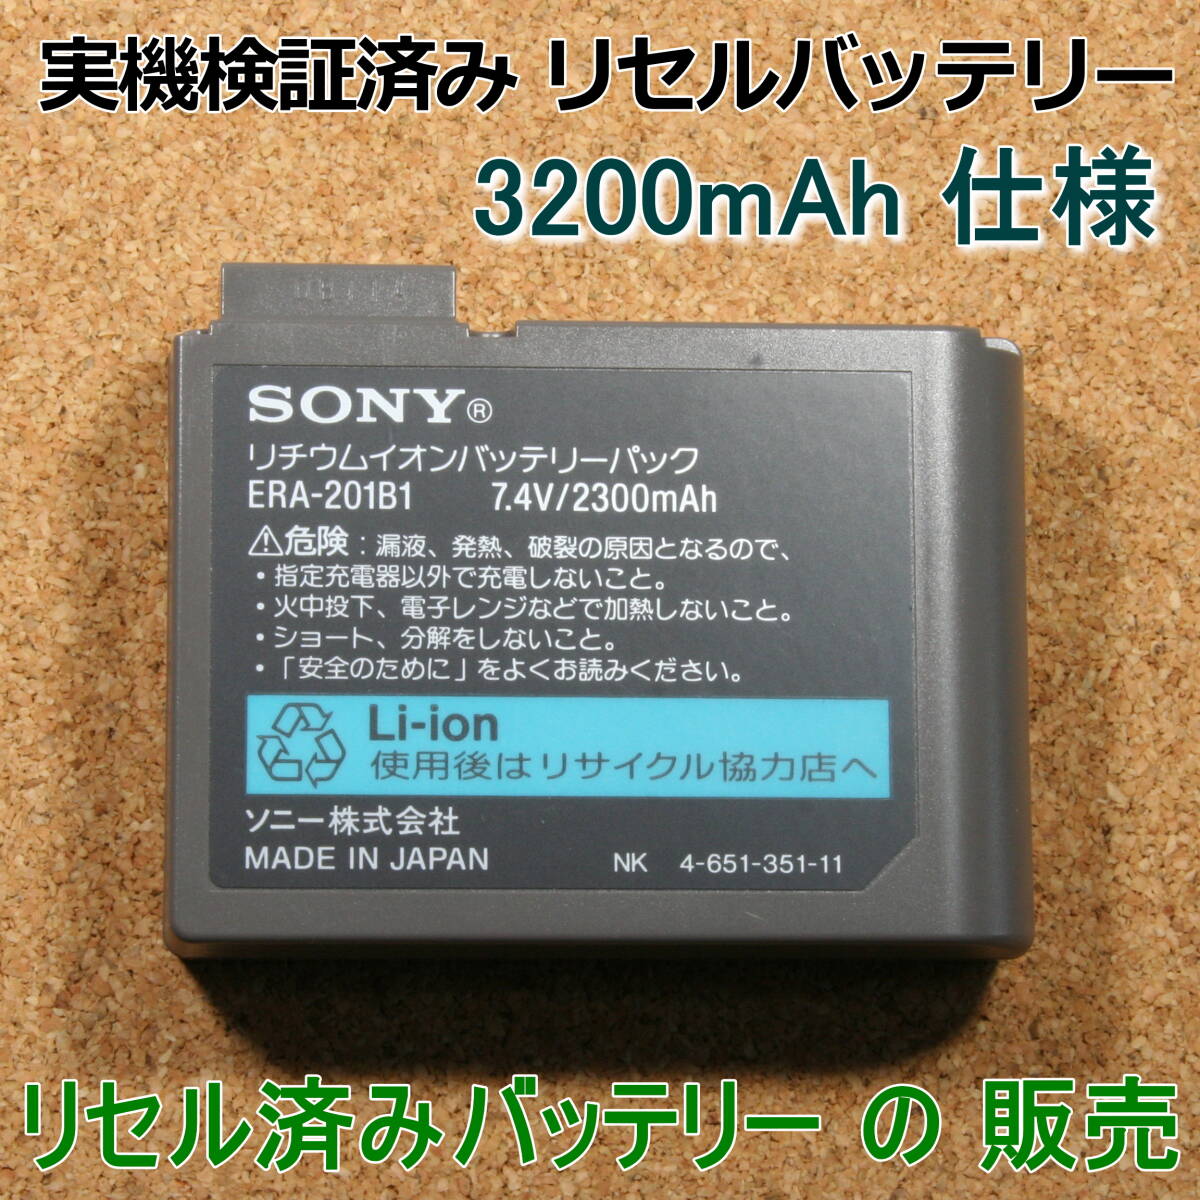 【販売】AIBO ERA-201B1 リセル3200mAh アイボ実機検証済バッテリーの画像1